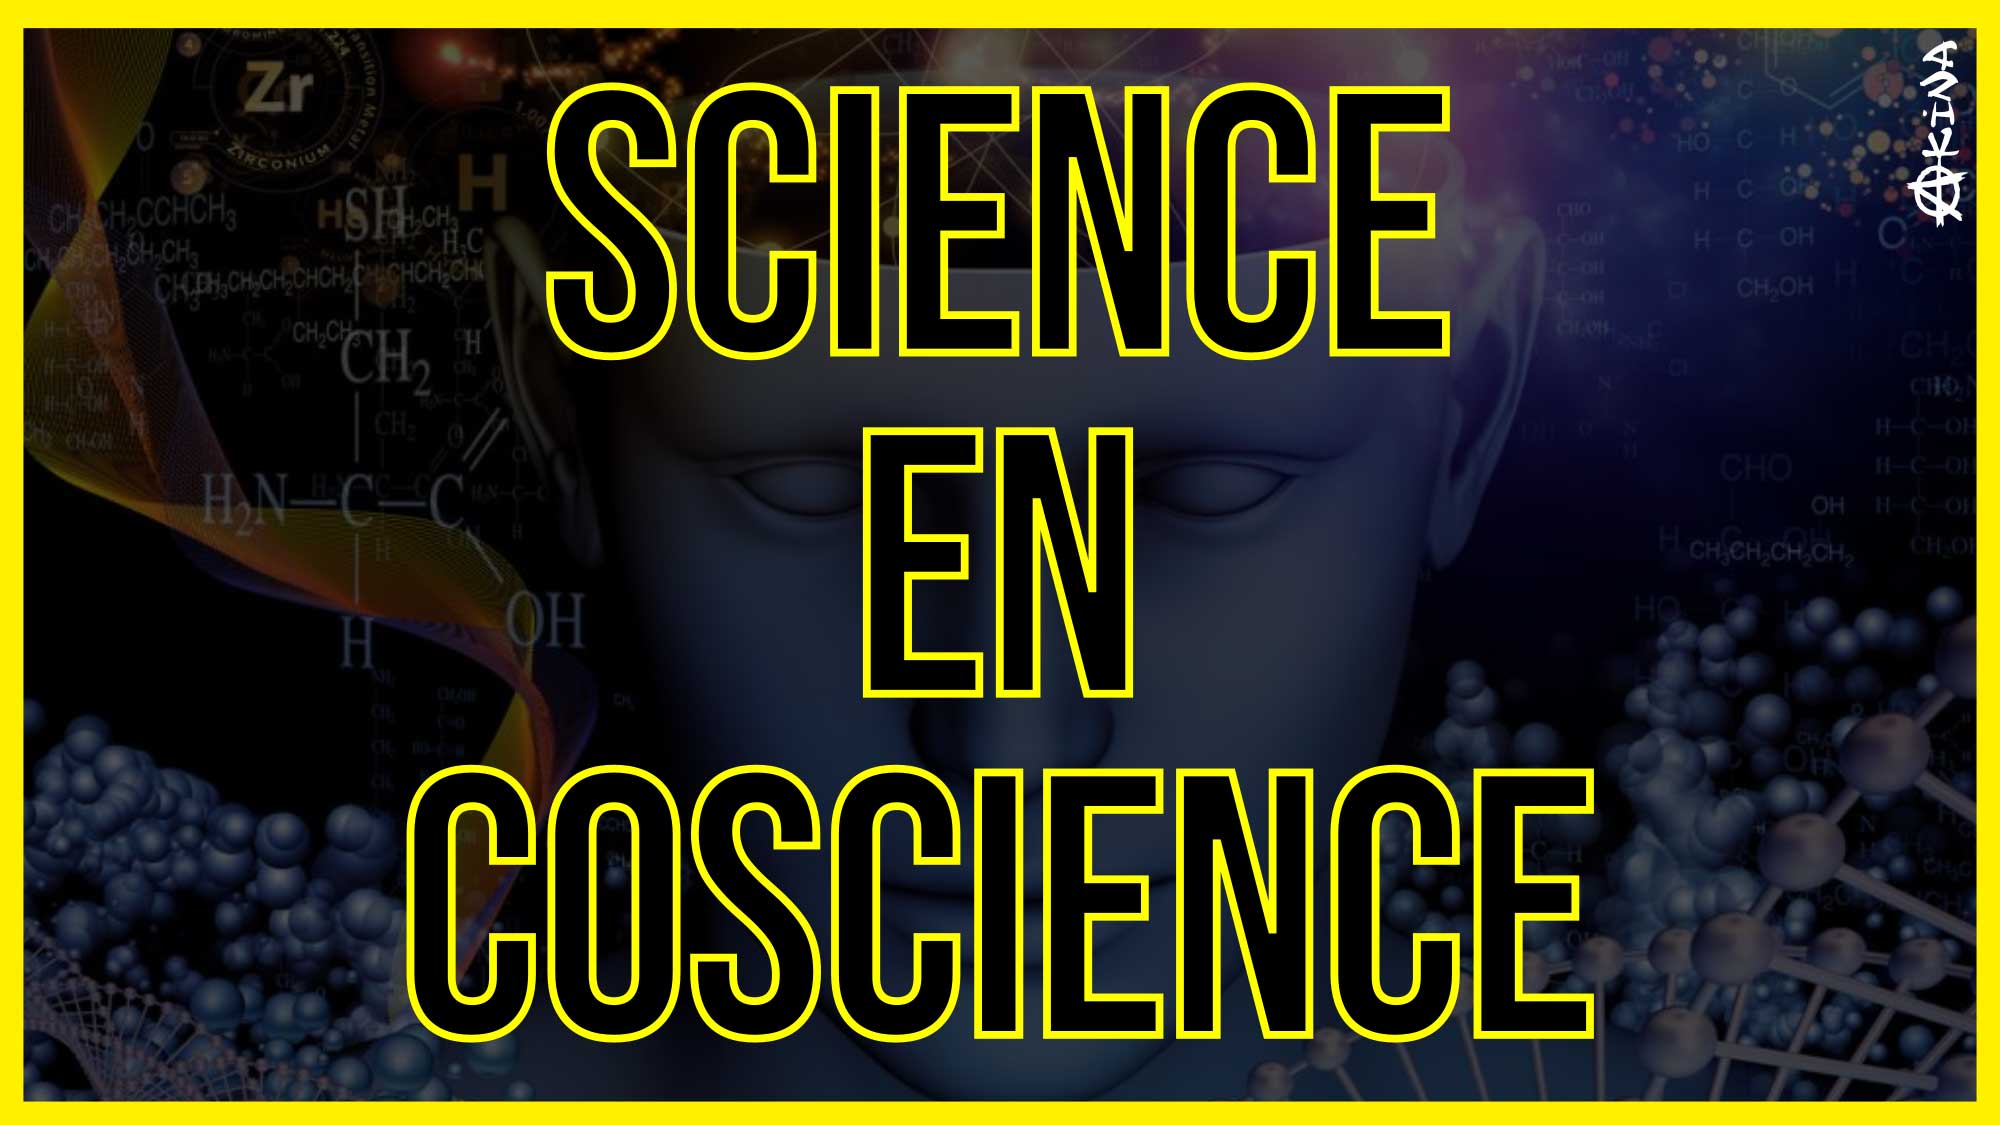 Science en Conscience